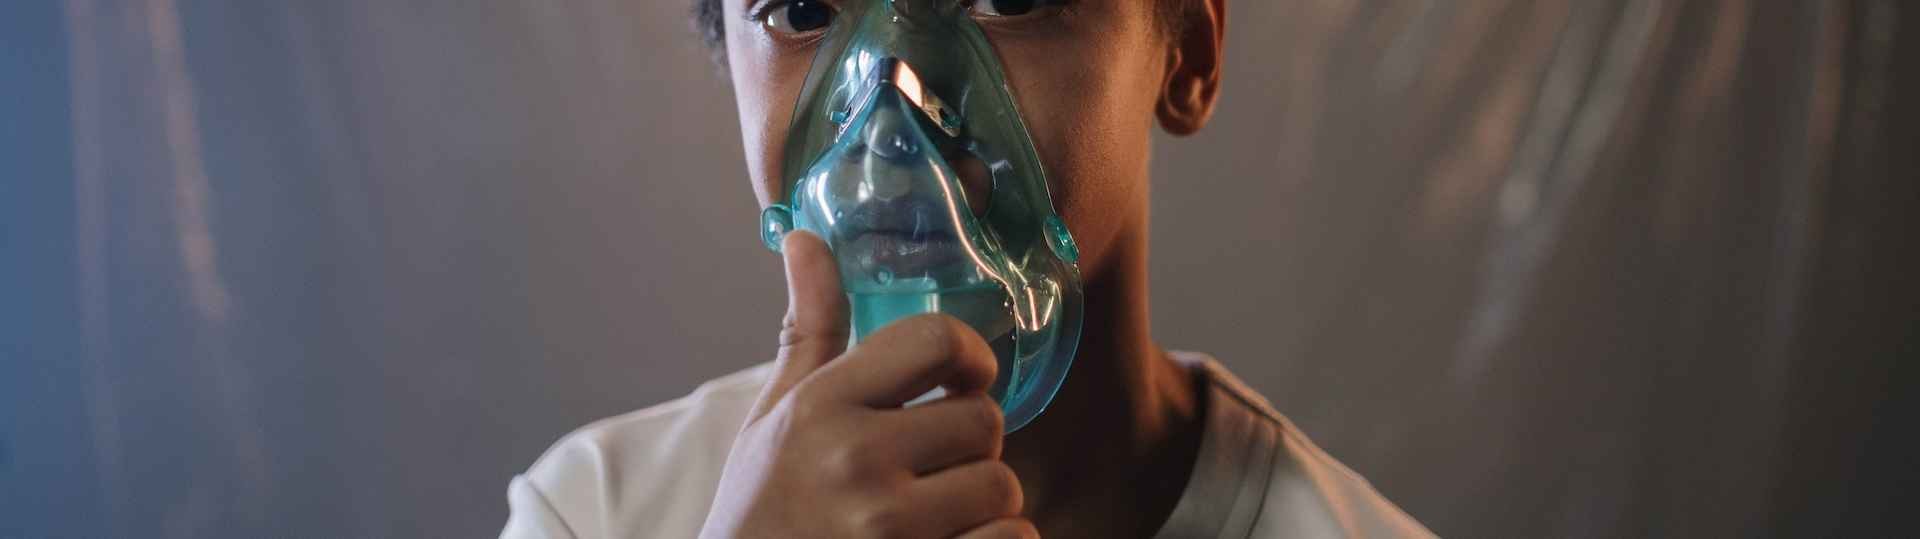 Fibrosis quística, la enfermedad que no te deja respirar